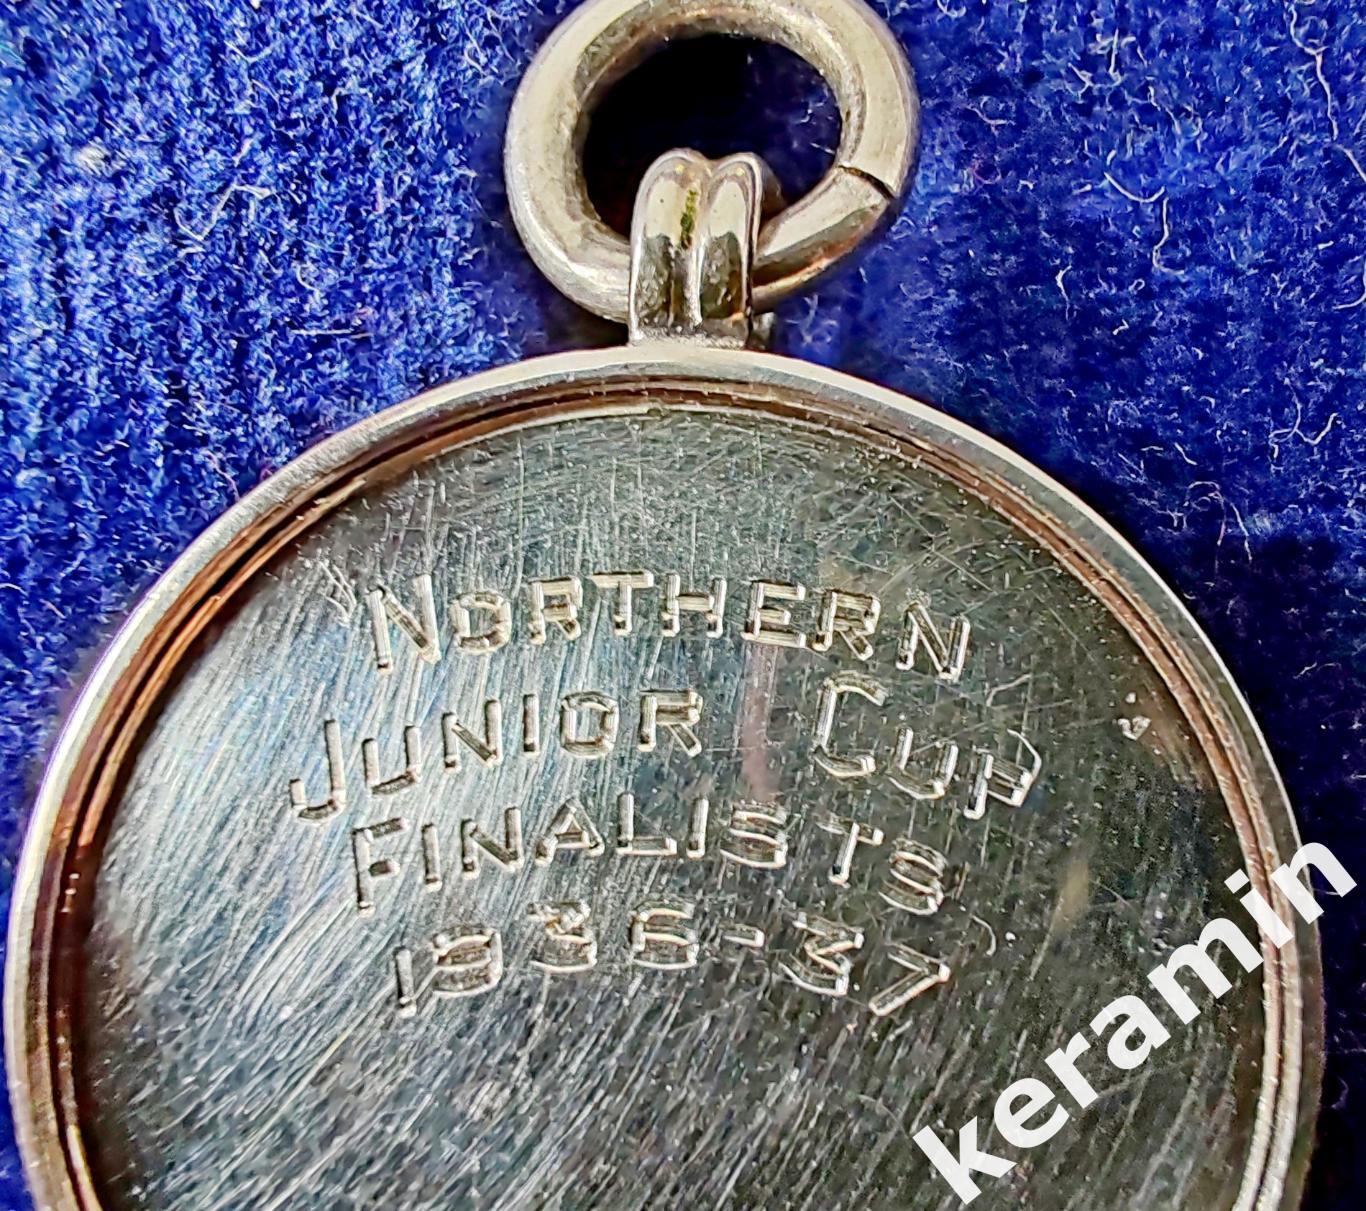 1936-37 медальон из 9-каратного золота и эмали Футбольной ассоциации Глостершира 2